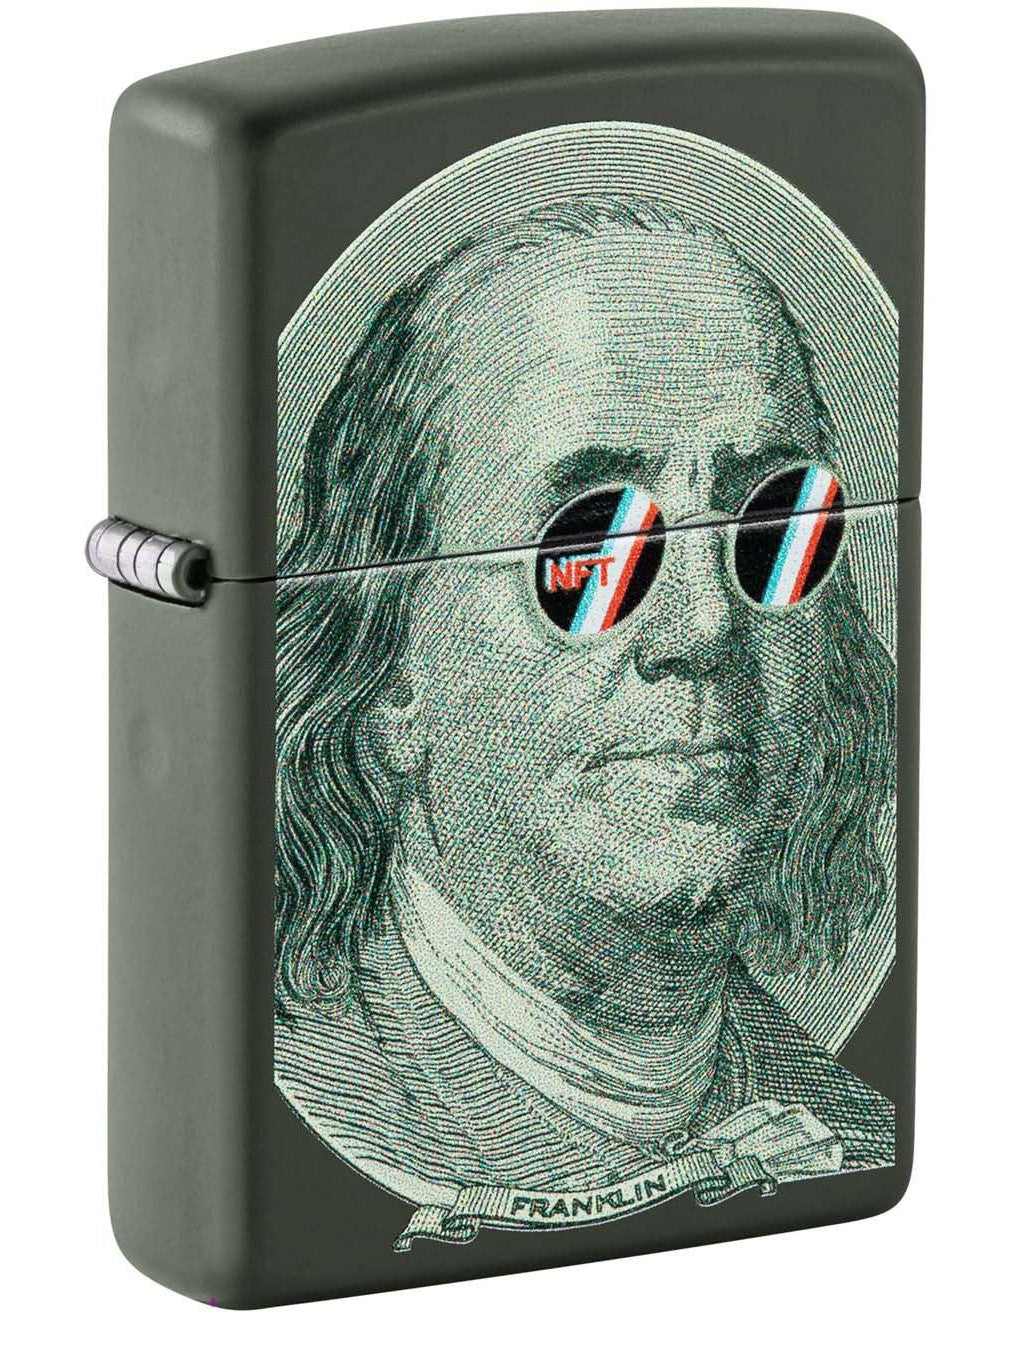 Zippo Lighter: Ben Franklin With NFT Sunglasses - Green Matte 48539